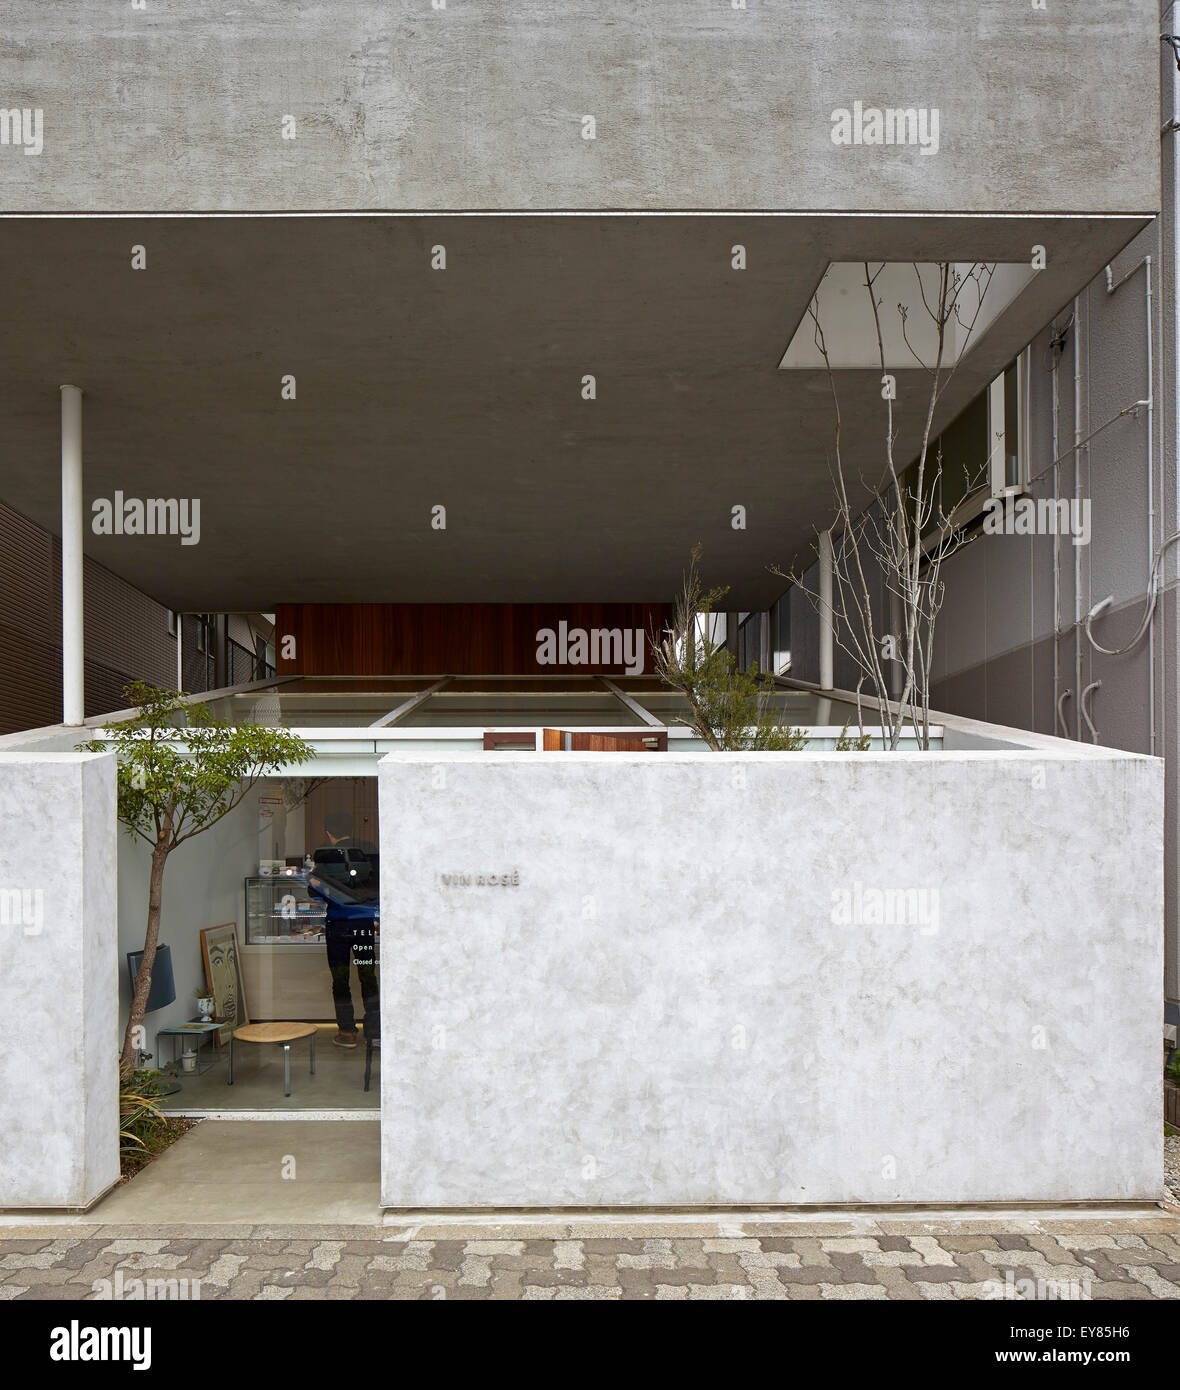 Élévation avant vers l'entrée. Maison Katsutadai, Chiba, Japon. Architecte : Yuko Nagayama et associés, 2015. Banque D'Images